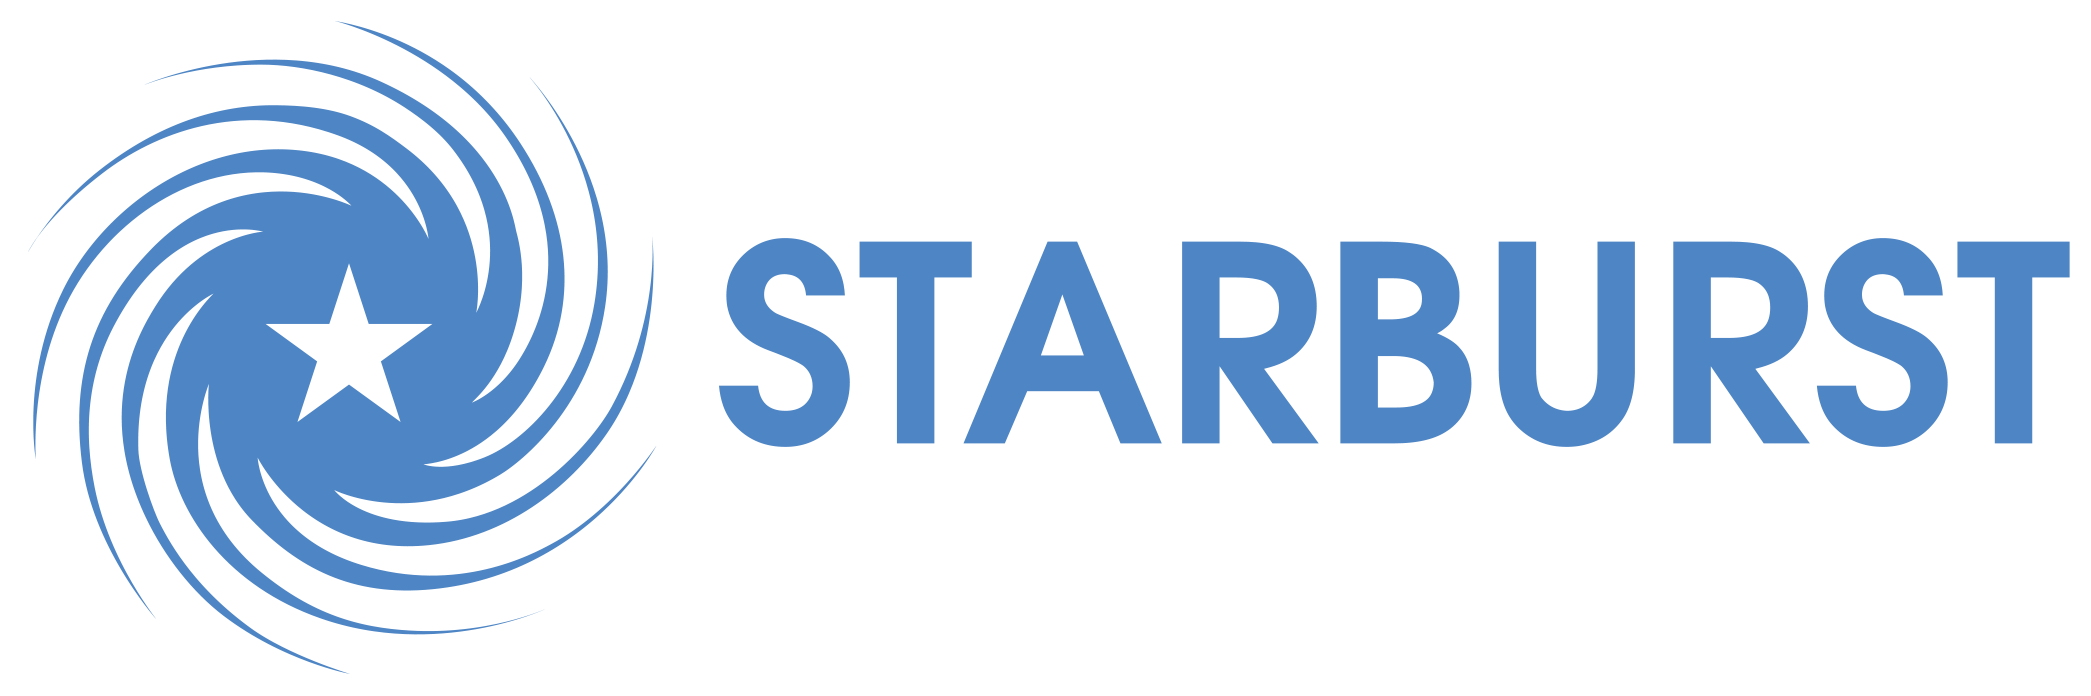 Starburst Logo - Starburst Aerospace Accelerator